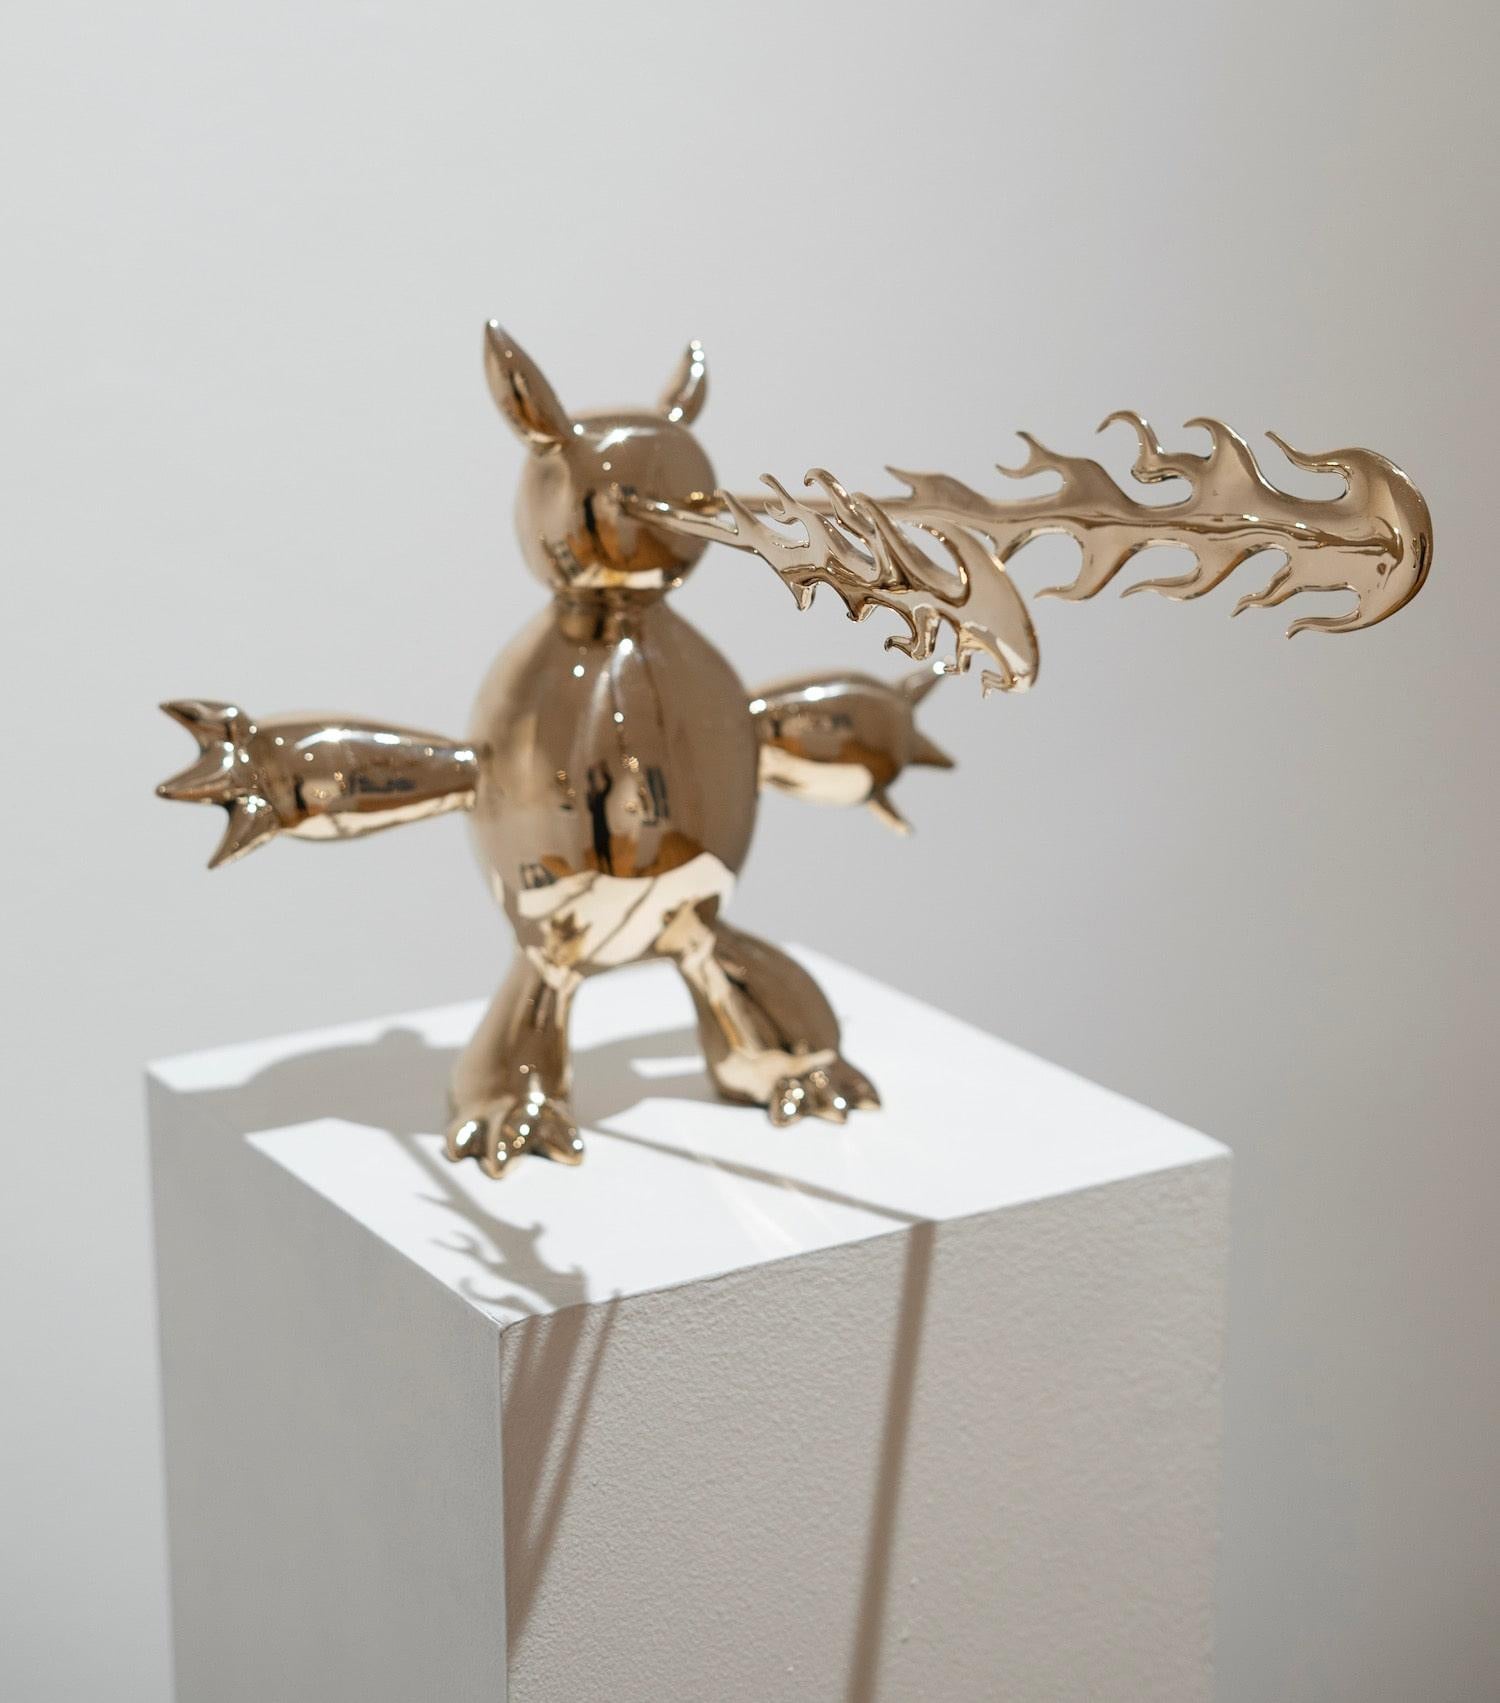 Furious Demon est une sculpture en bronze poli de l'artiste contemporain Marcelo Martin Burgos, dont les dimensions sont de 27 × 29 × 30 cm (10,6 × 11,4 × 11,8 in). 
La sculpture est signée et numérotée, elle fait partie d'une édition limitée à 12